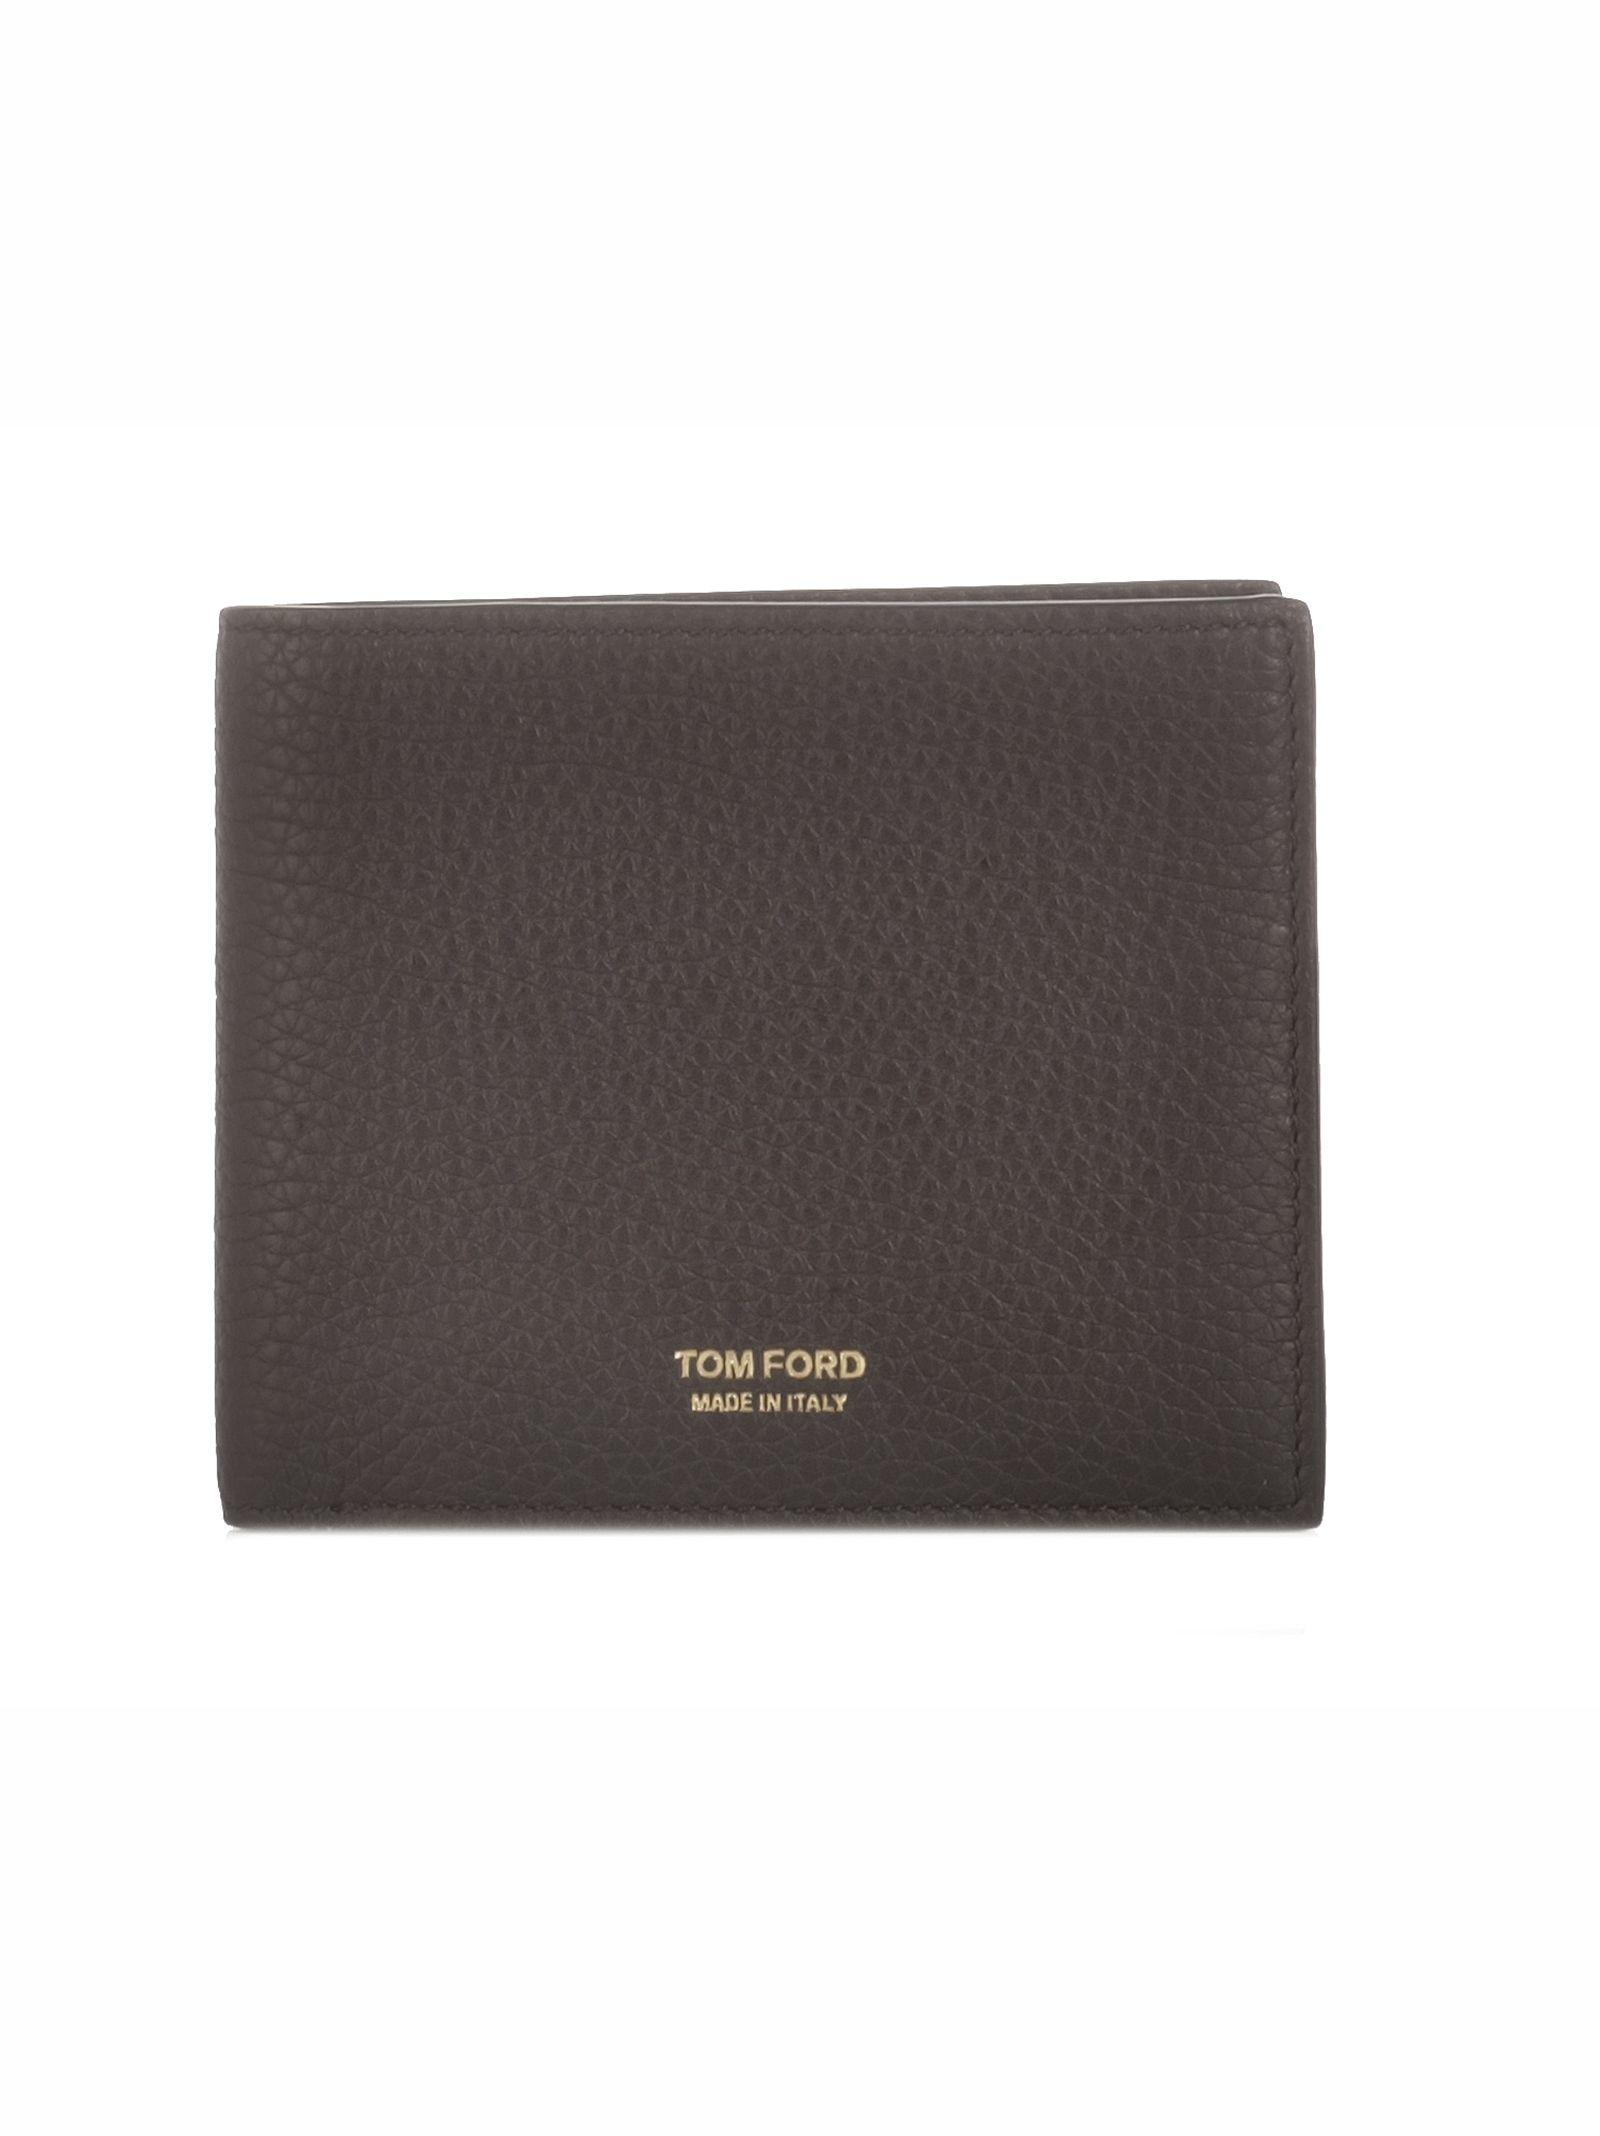 Tom Ford Black Leather Wallet in Black for Men - Lyst